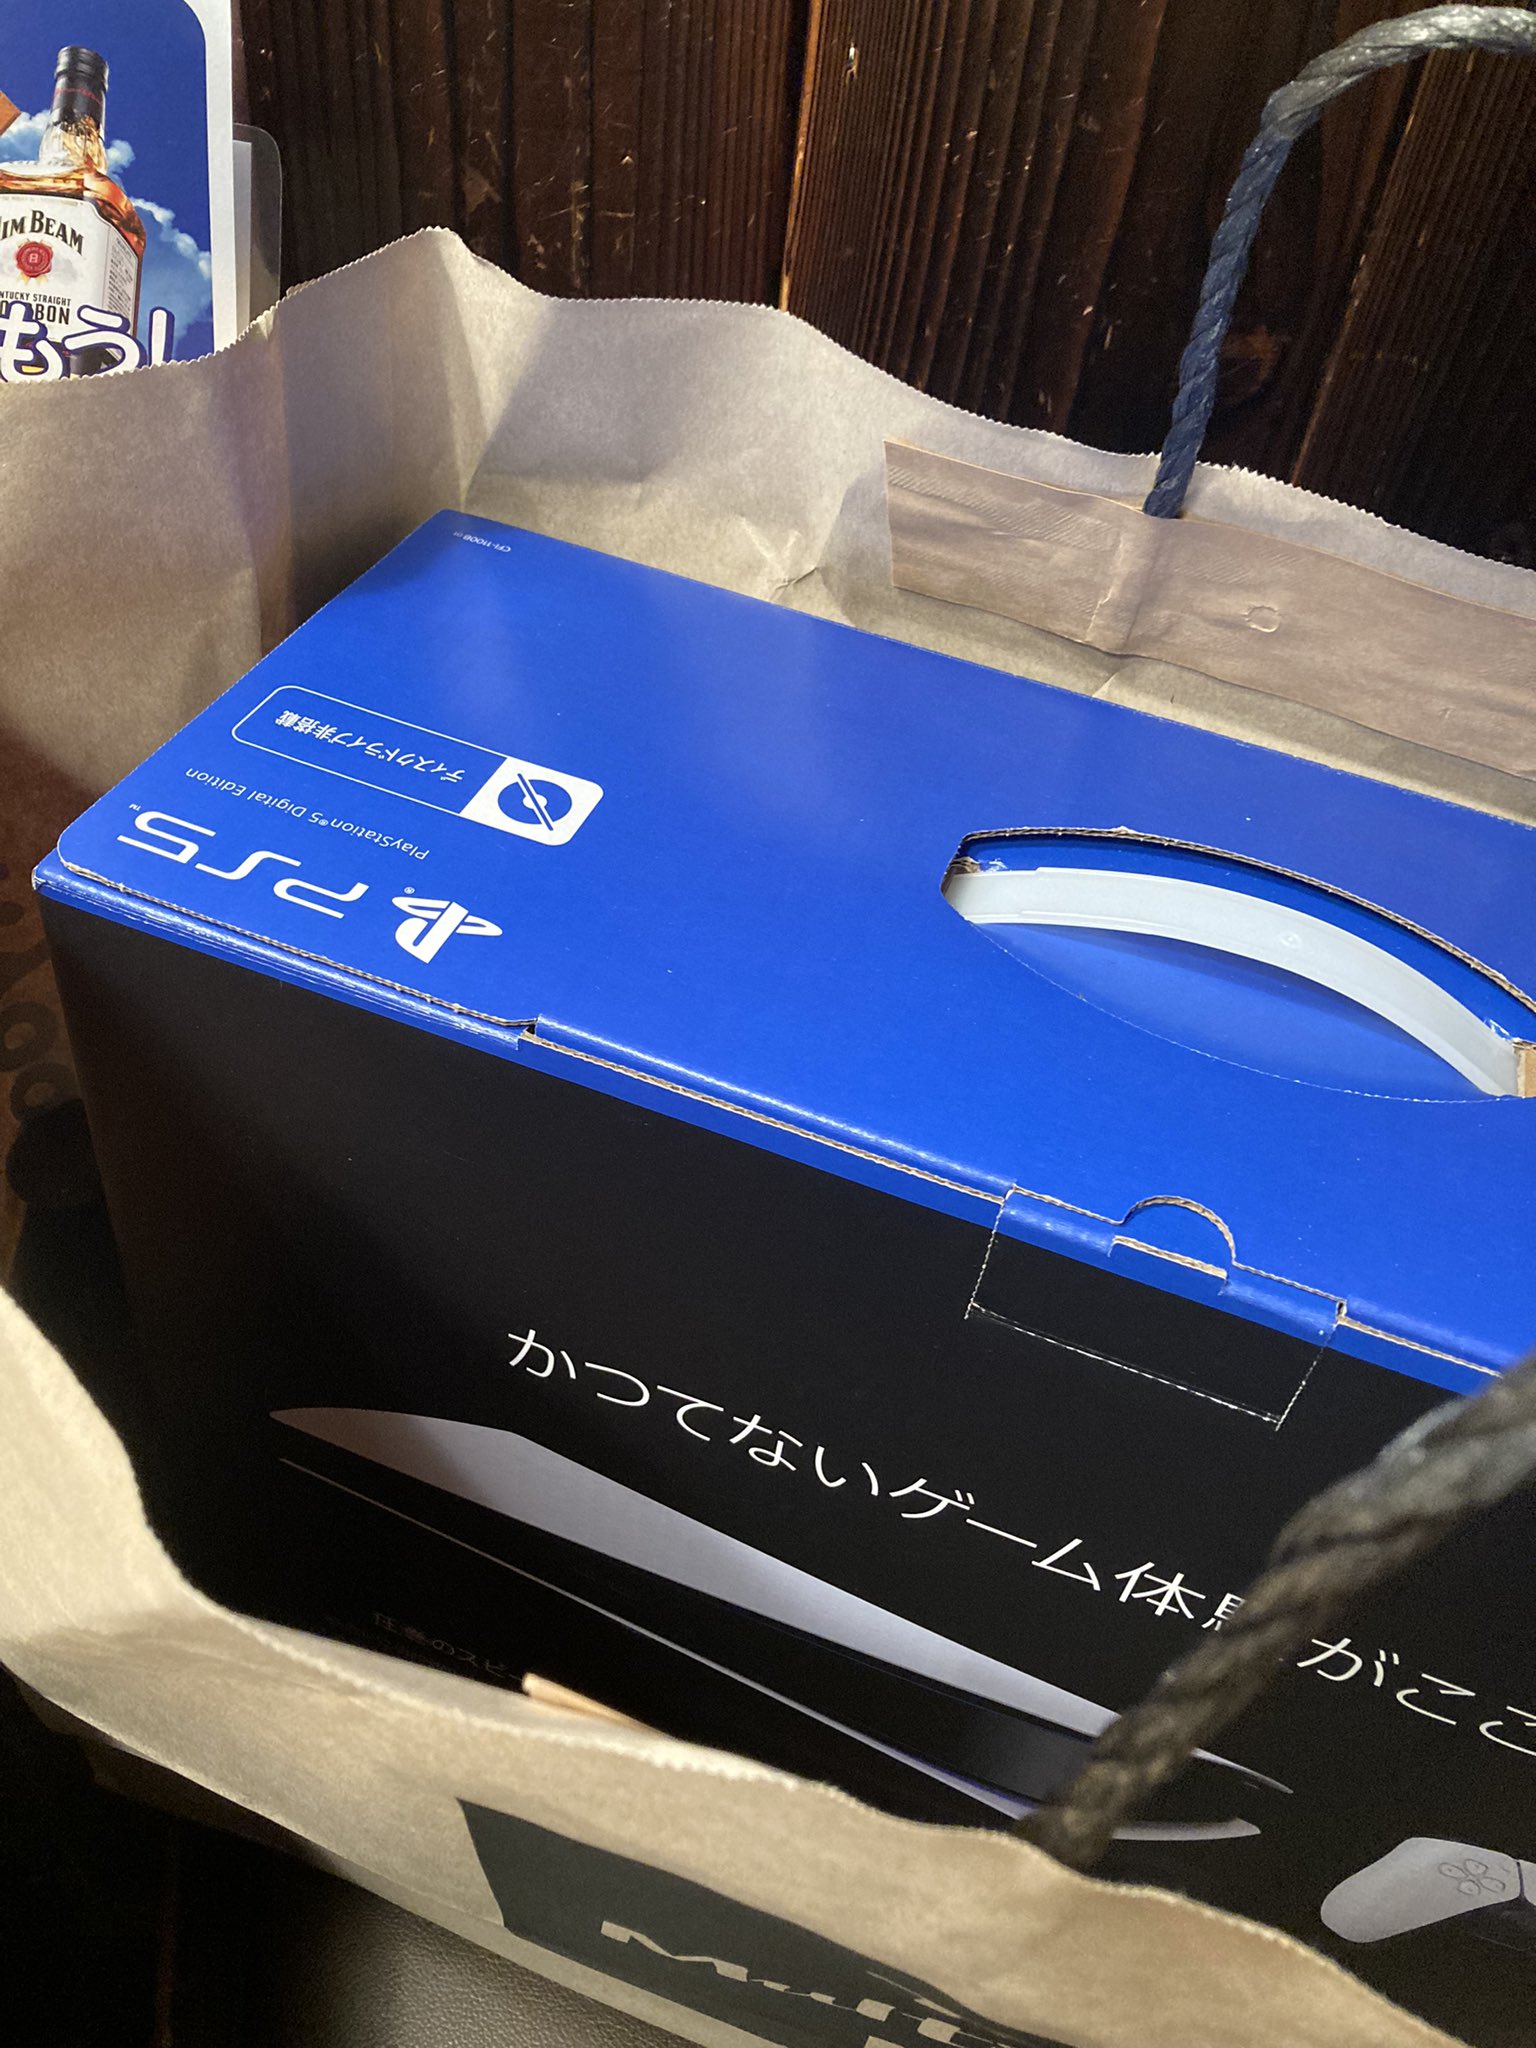 ふじわーき@taka fuji on Twitter: "梅田のヨドバシにps5あったから買いました。 https://t.co